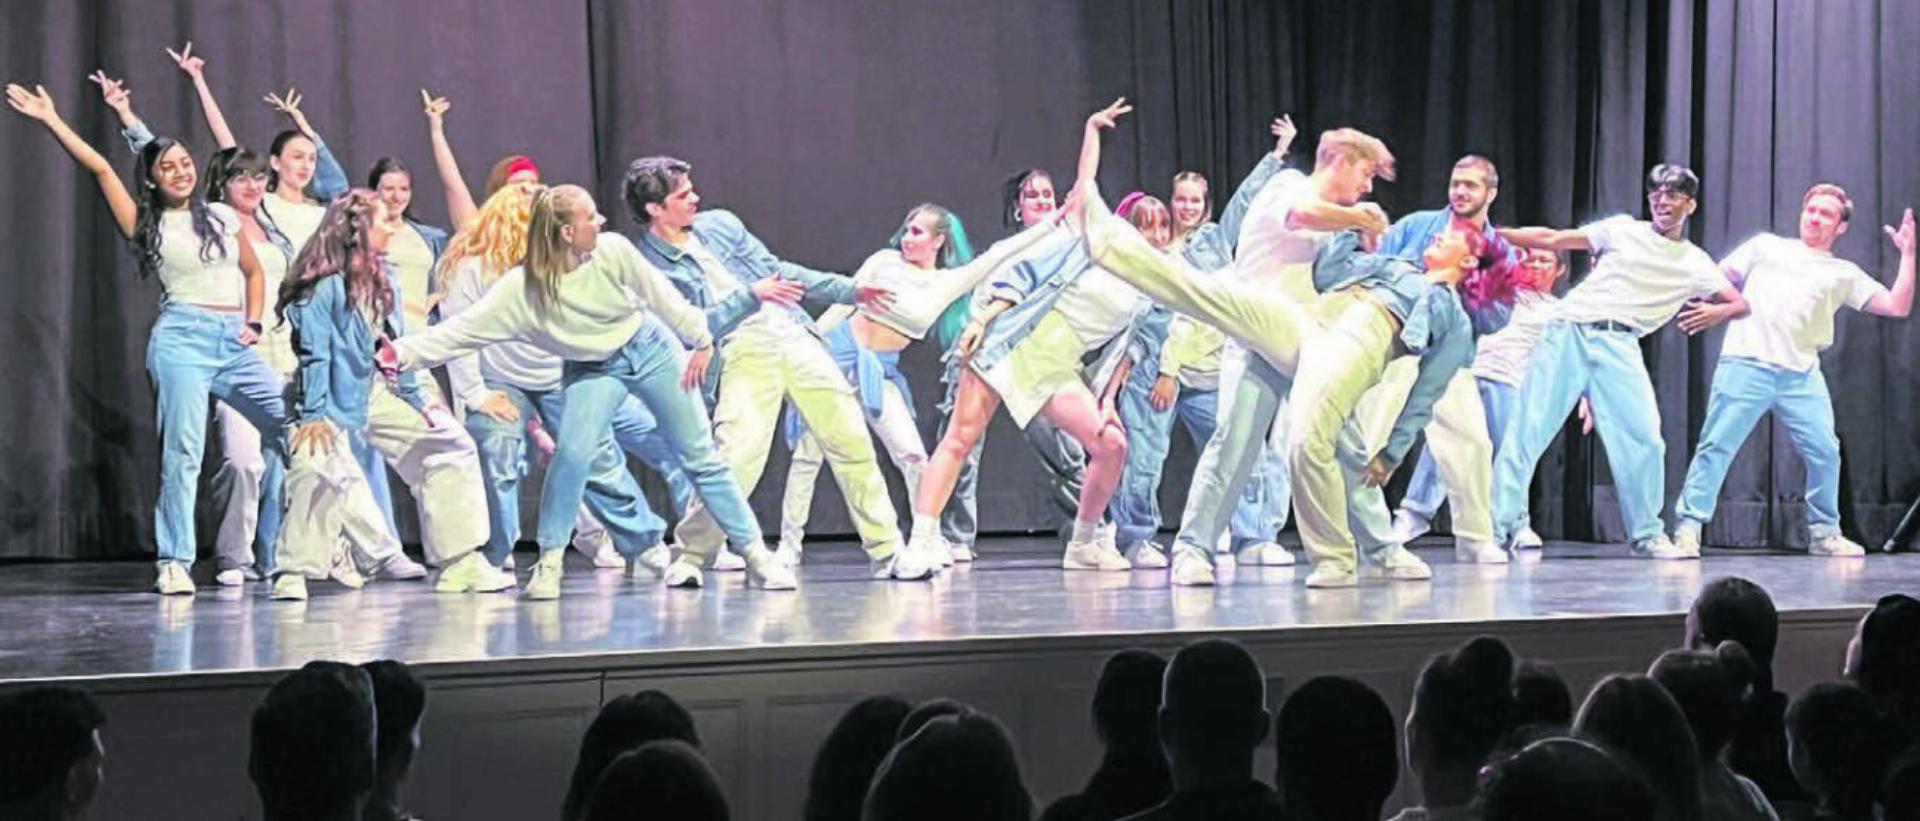 Let’s dance: Sämtliche Tänzerinnen und Tänzer wussten das Publikum zu begeistern. Bilder: Walter Minder